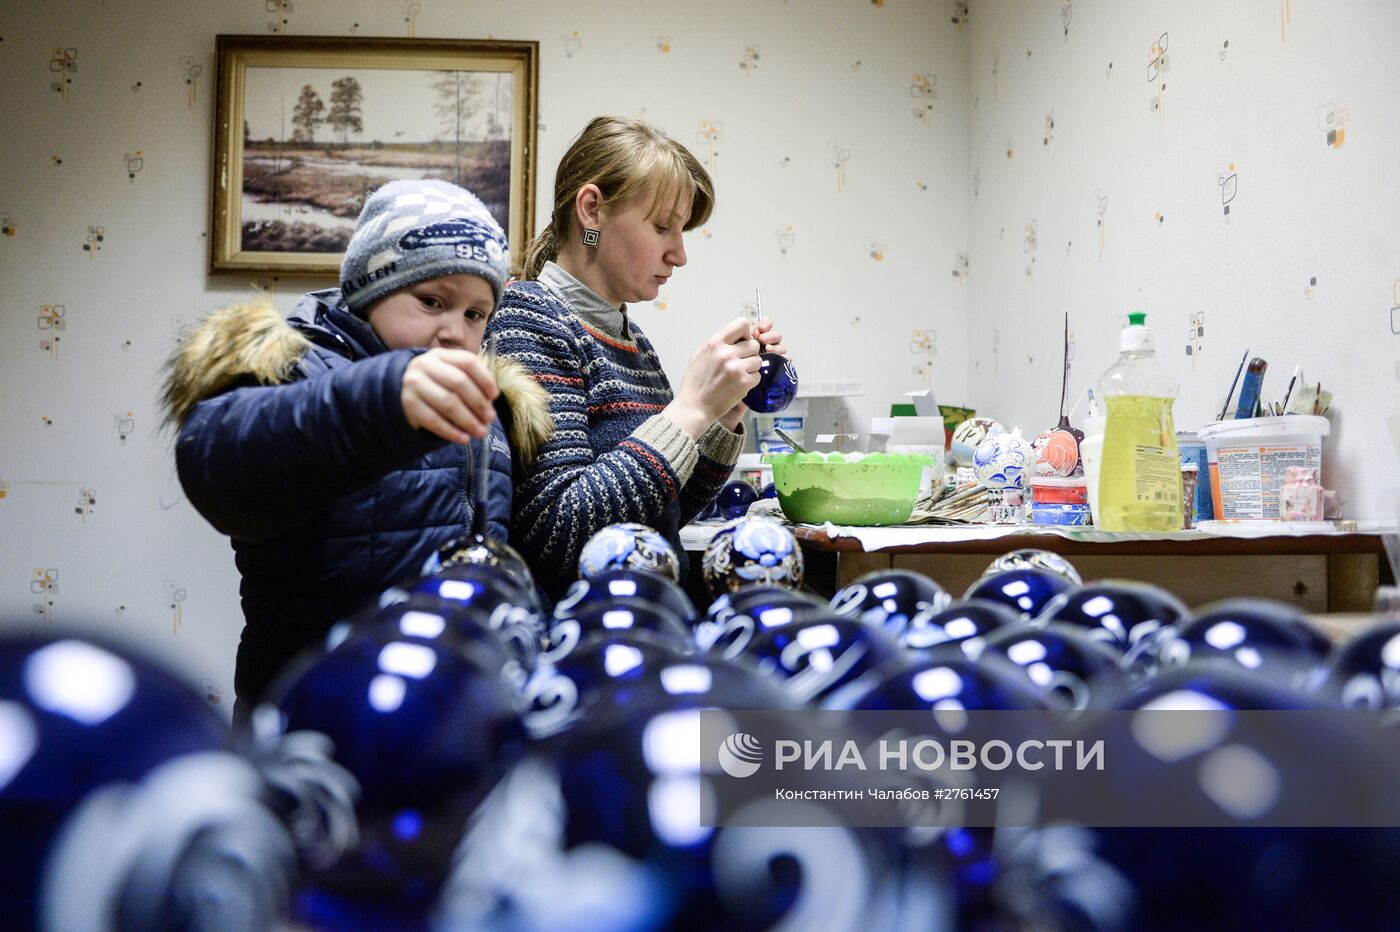 Изготовление елочных игрушек на предприятии "Шаг за шагом" в Новгородской области